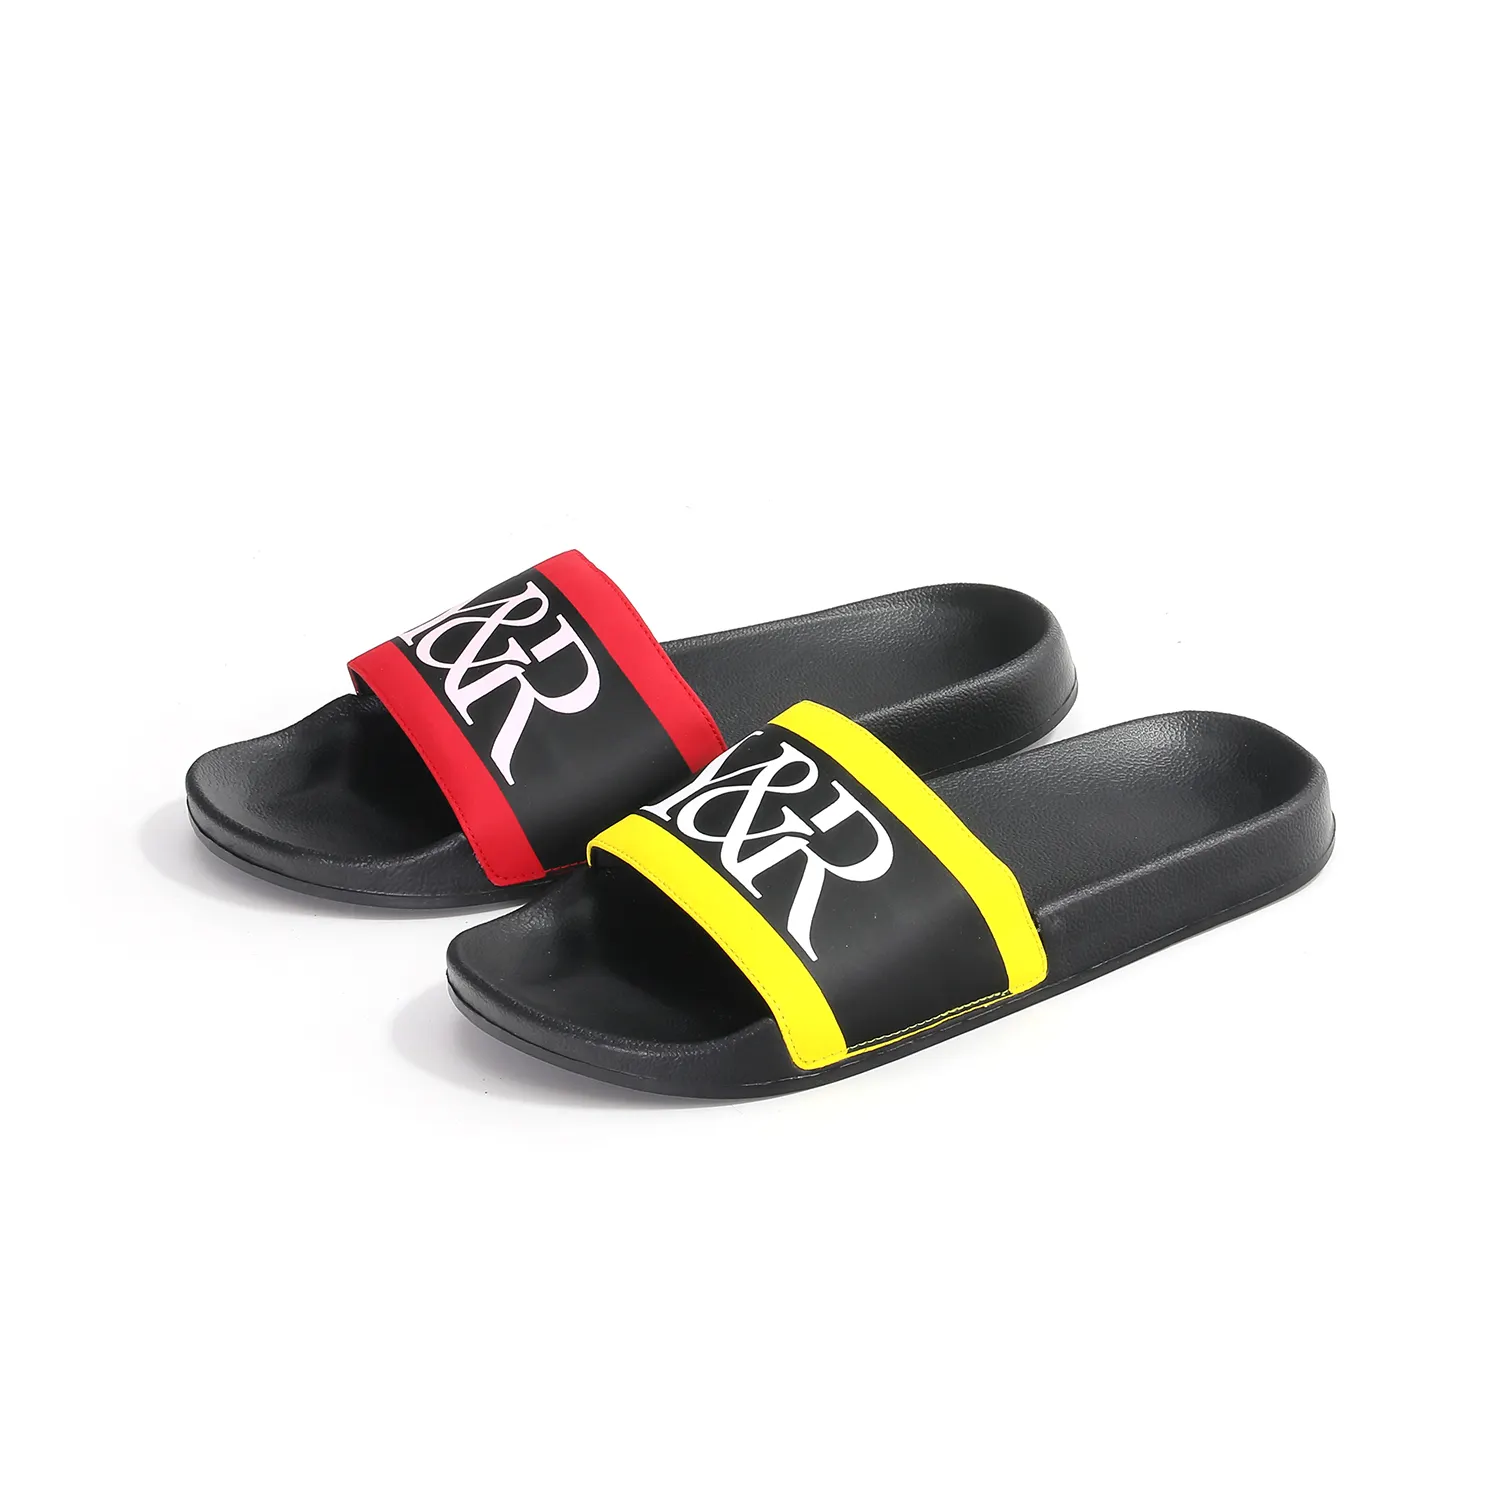 ब्रांड कस्टम लोगो सैंडल पुरुषों के चप्पल जूते ईवा फोम शीट से बने जिपलॉक स्लाइड डिजाइन डाउन फीचर के साथ लोकप्रिय ग्रीष्मकालीन